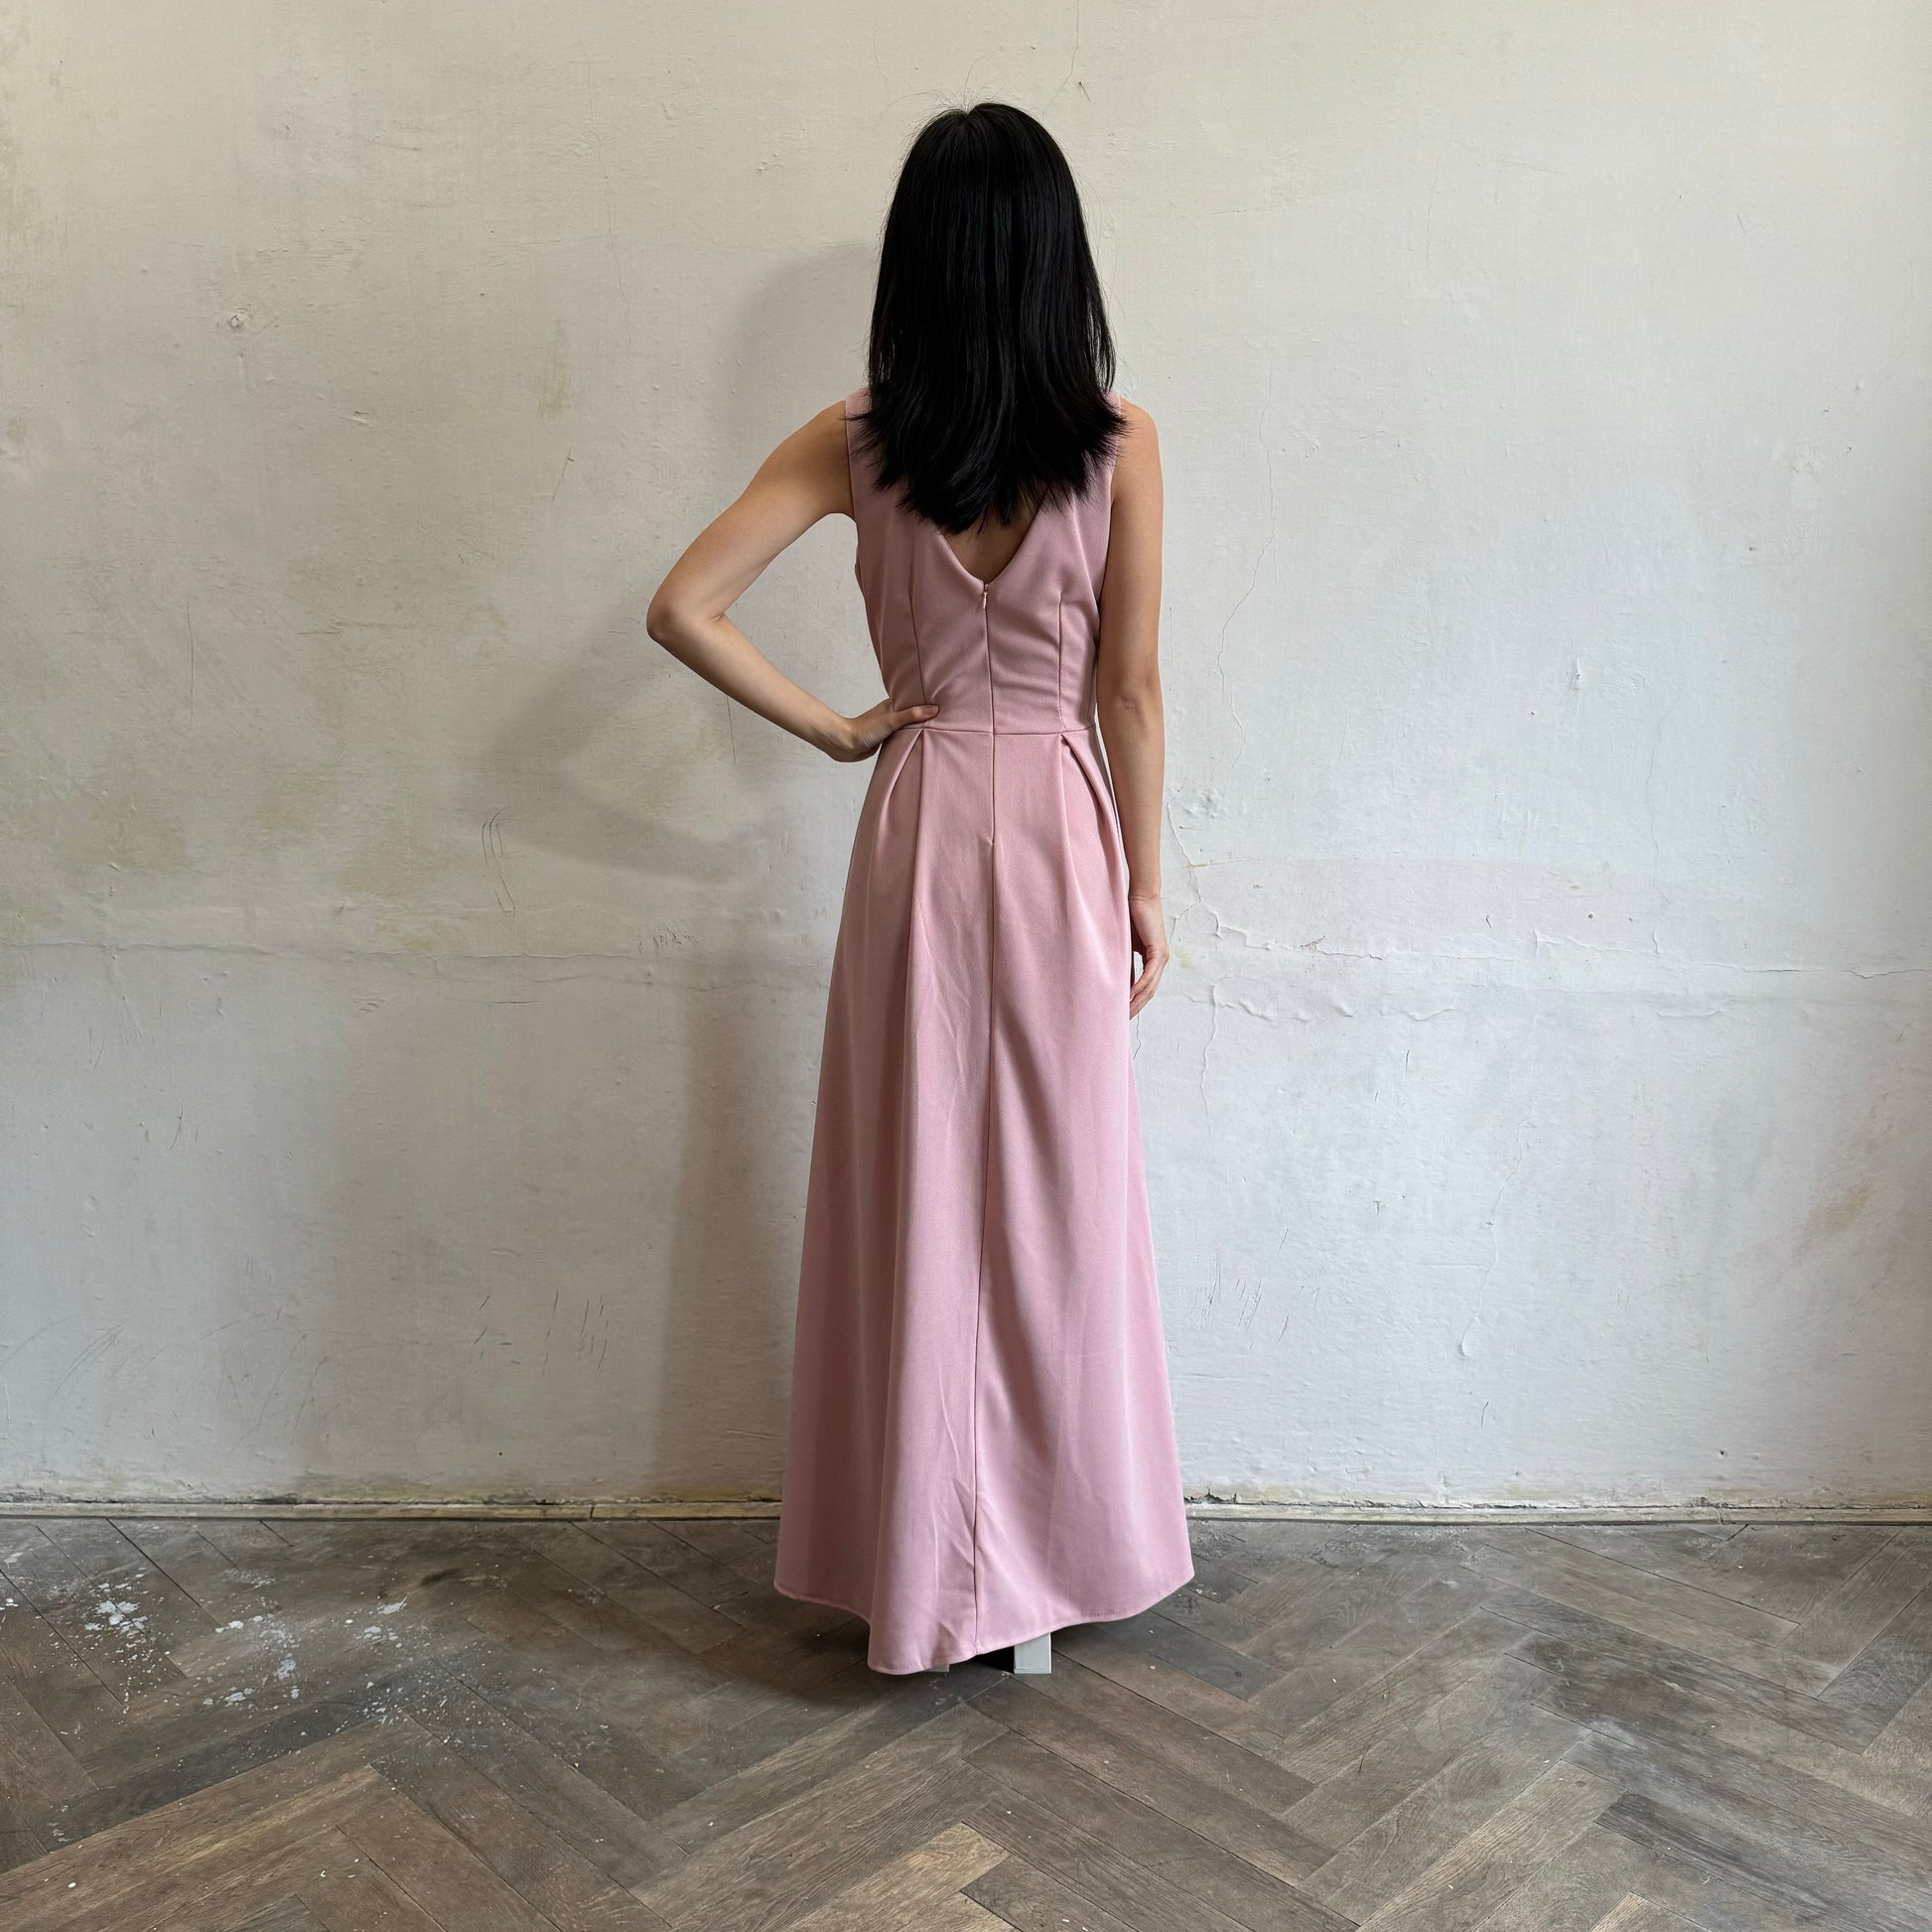 Modelka asijského původu pózující zezadu oblečená ve světle růžových společenských šatech s rozparkem